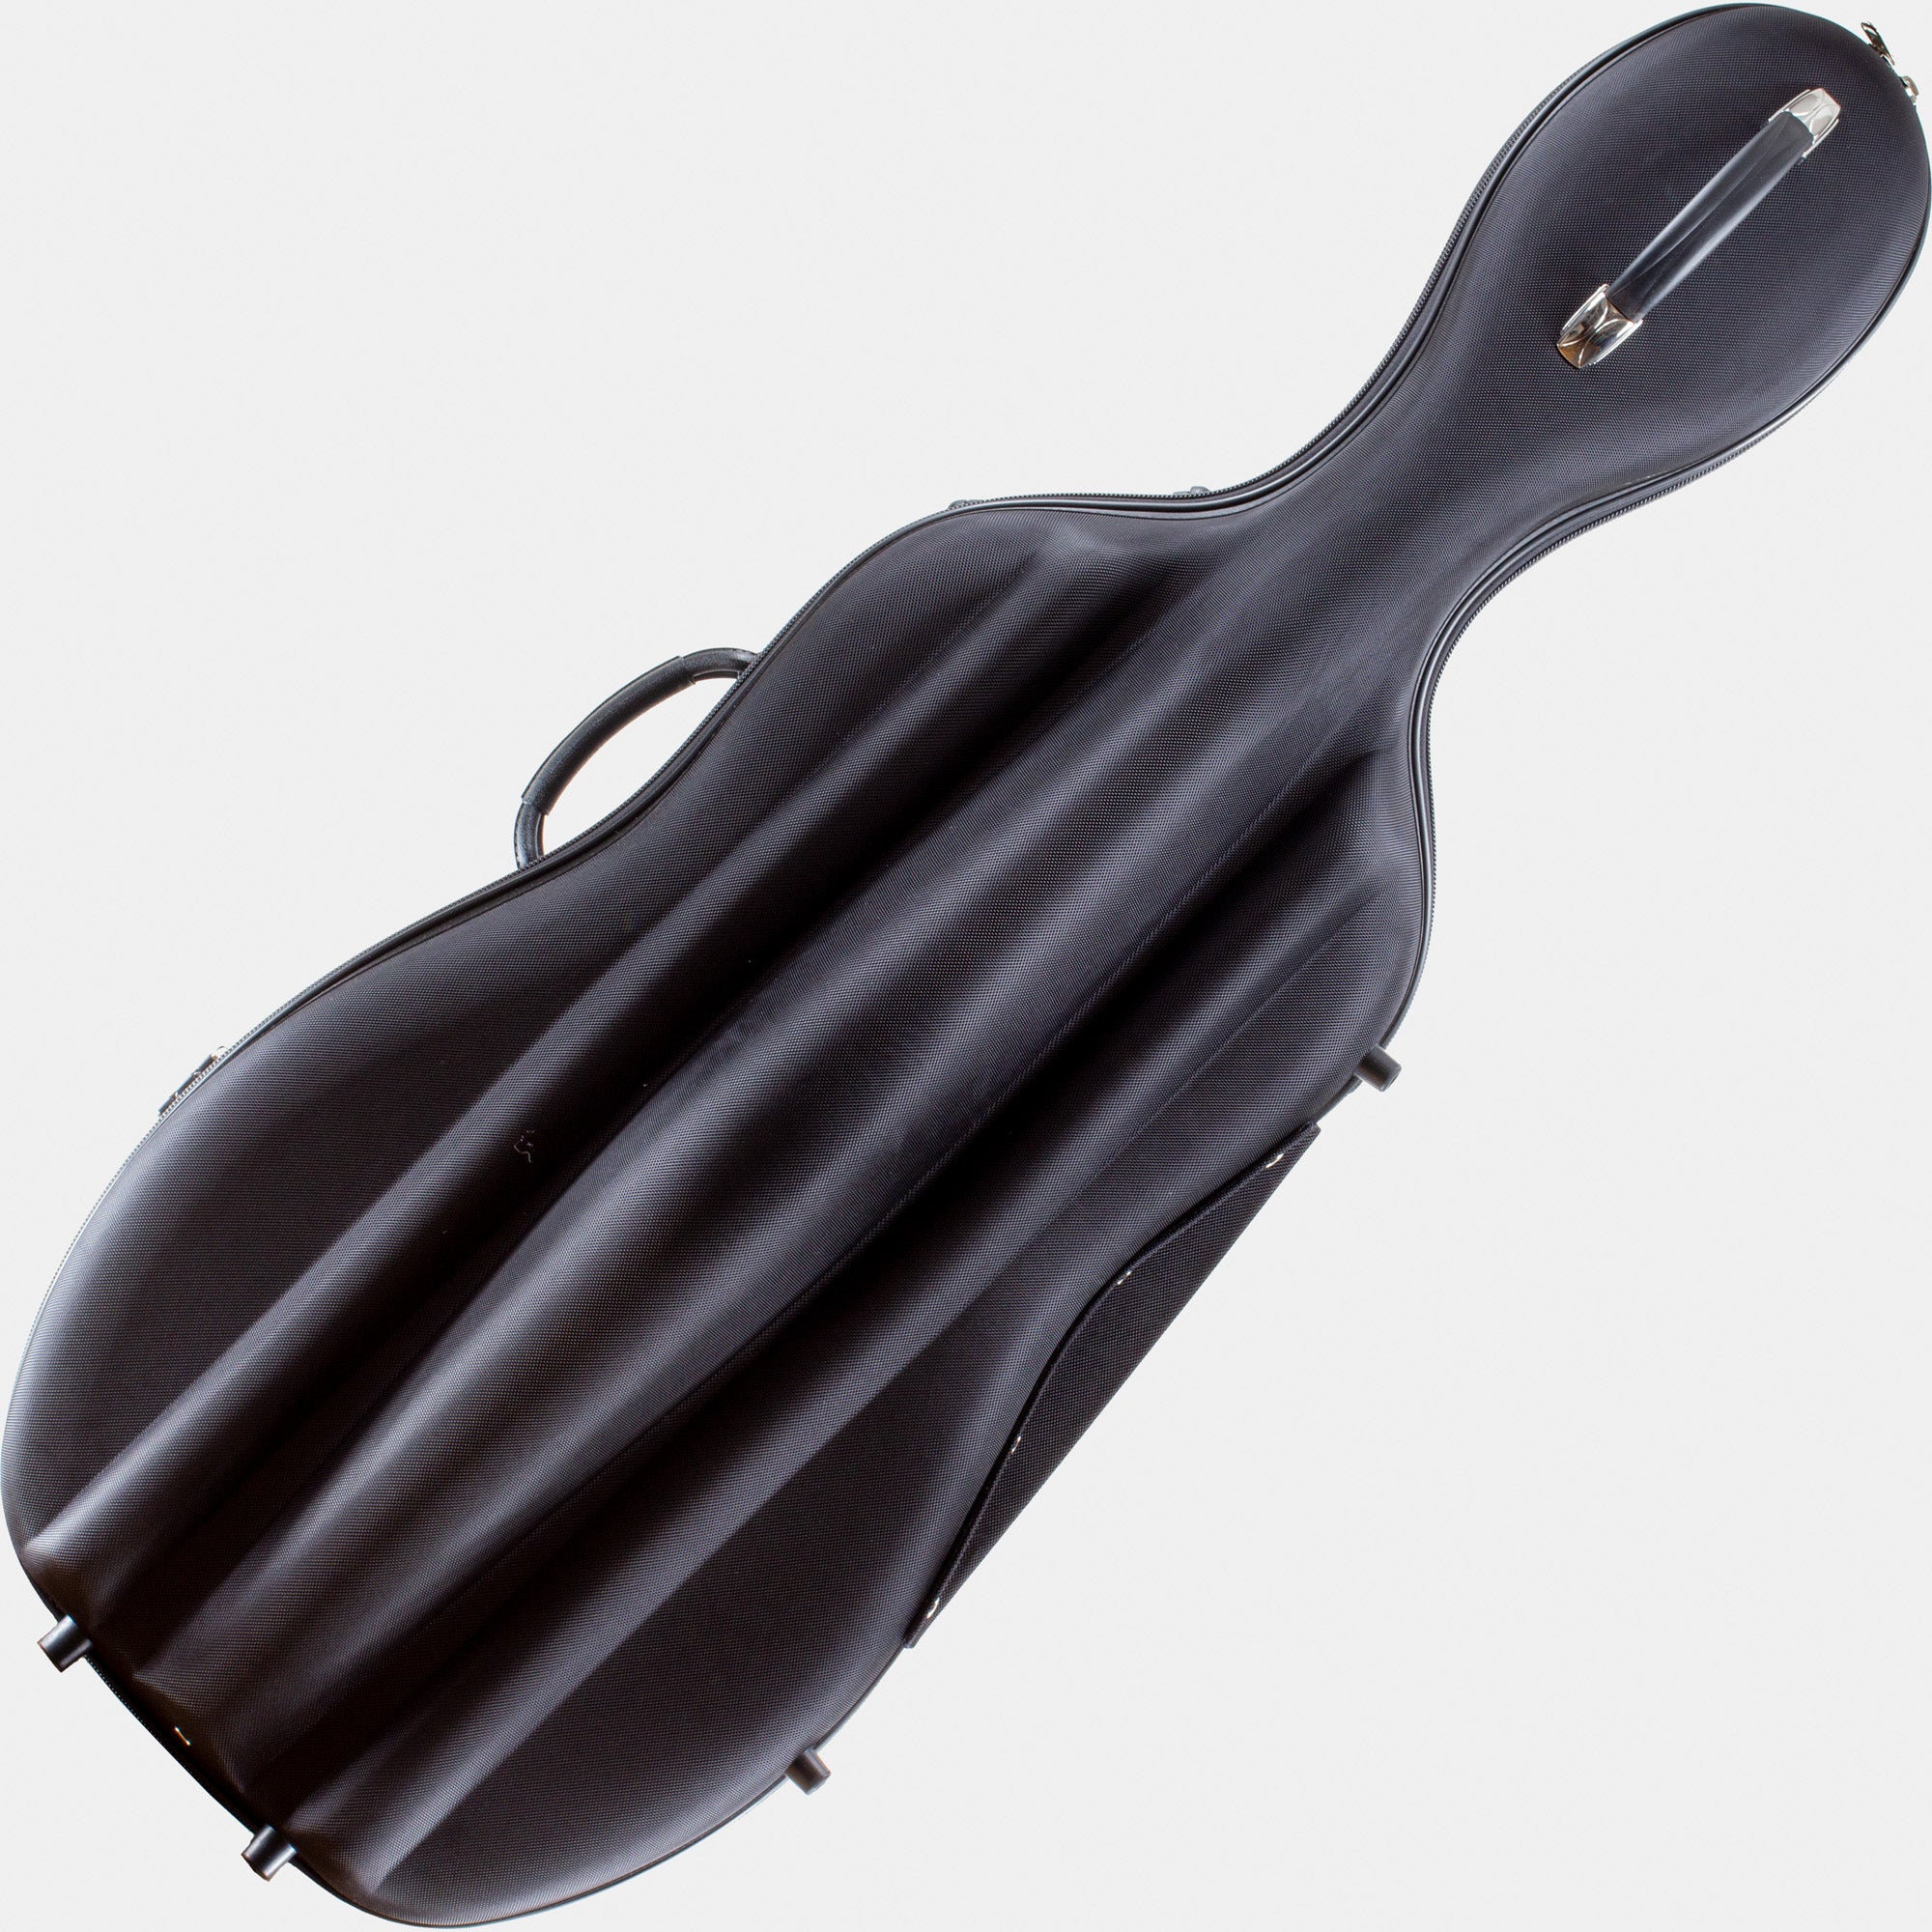 Semi-Rigid Cello Case